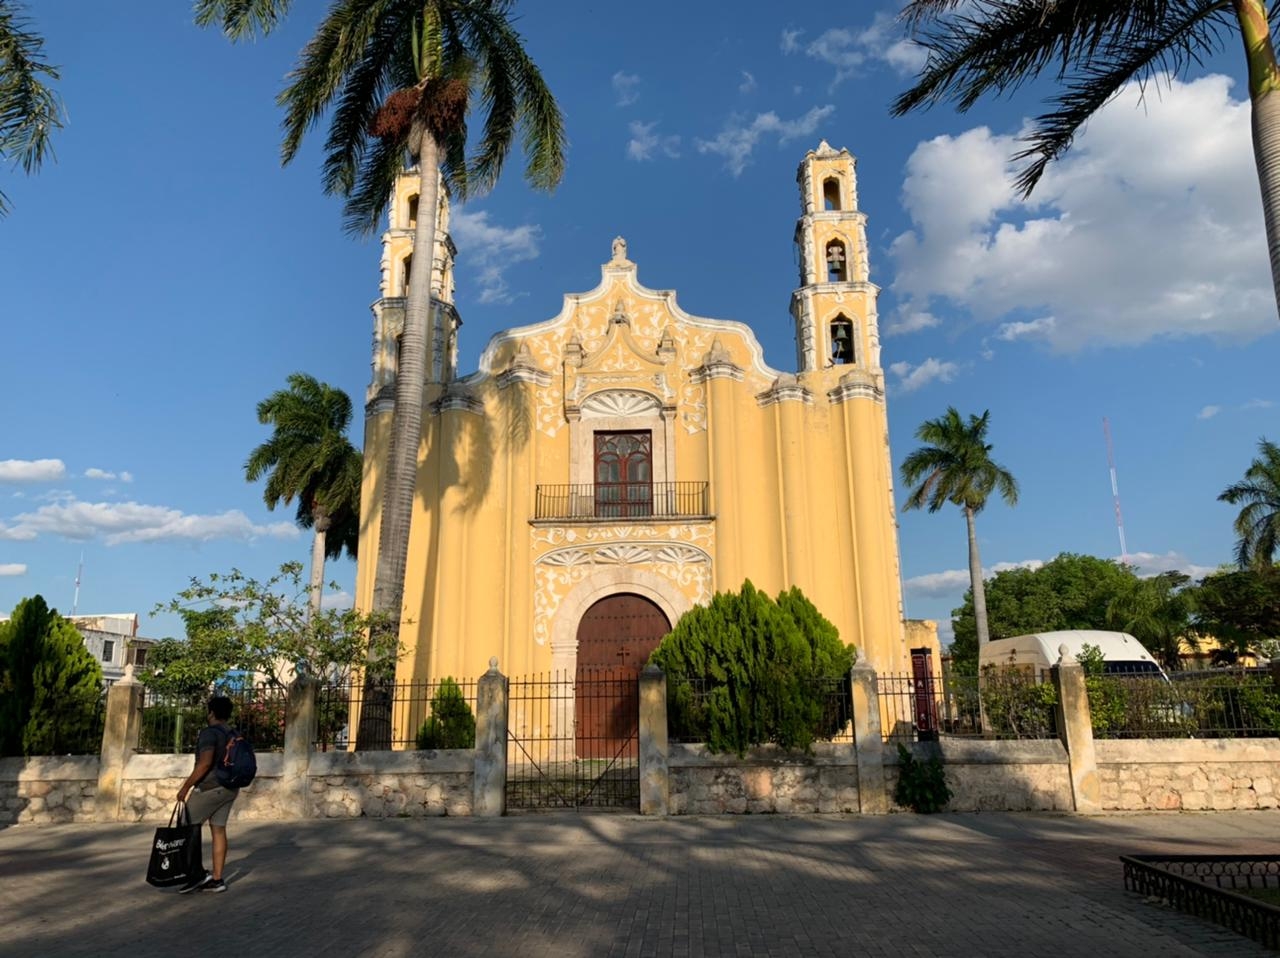 A principios del siglo XIX, esta iglesia “cobijó” a los Sanjuanistas en el proceso de independencia